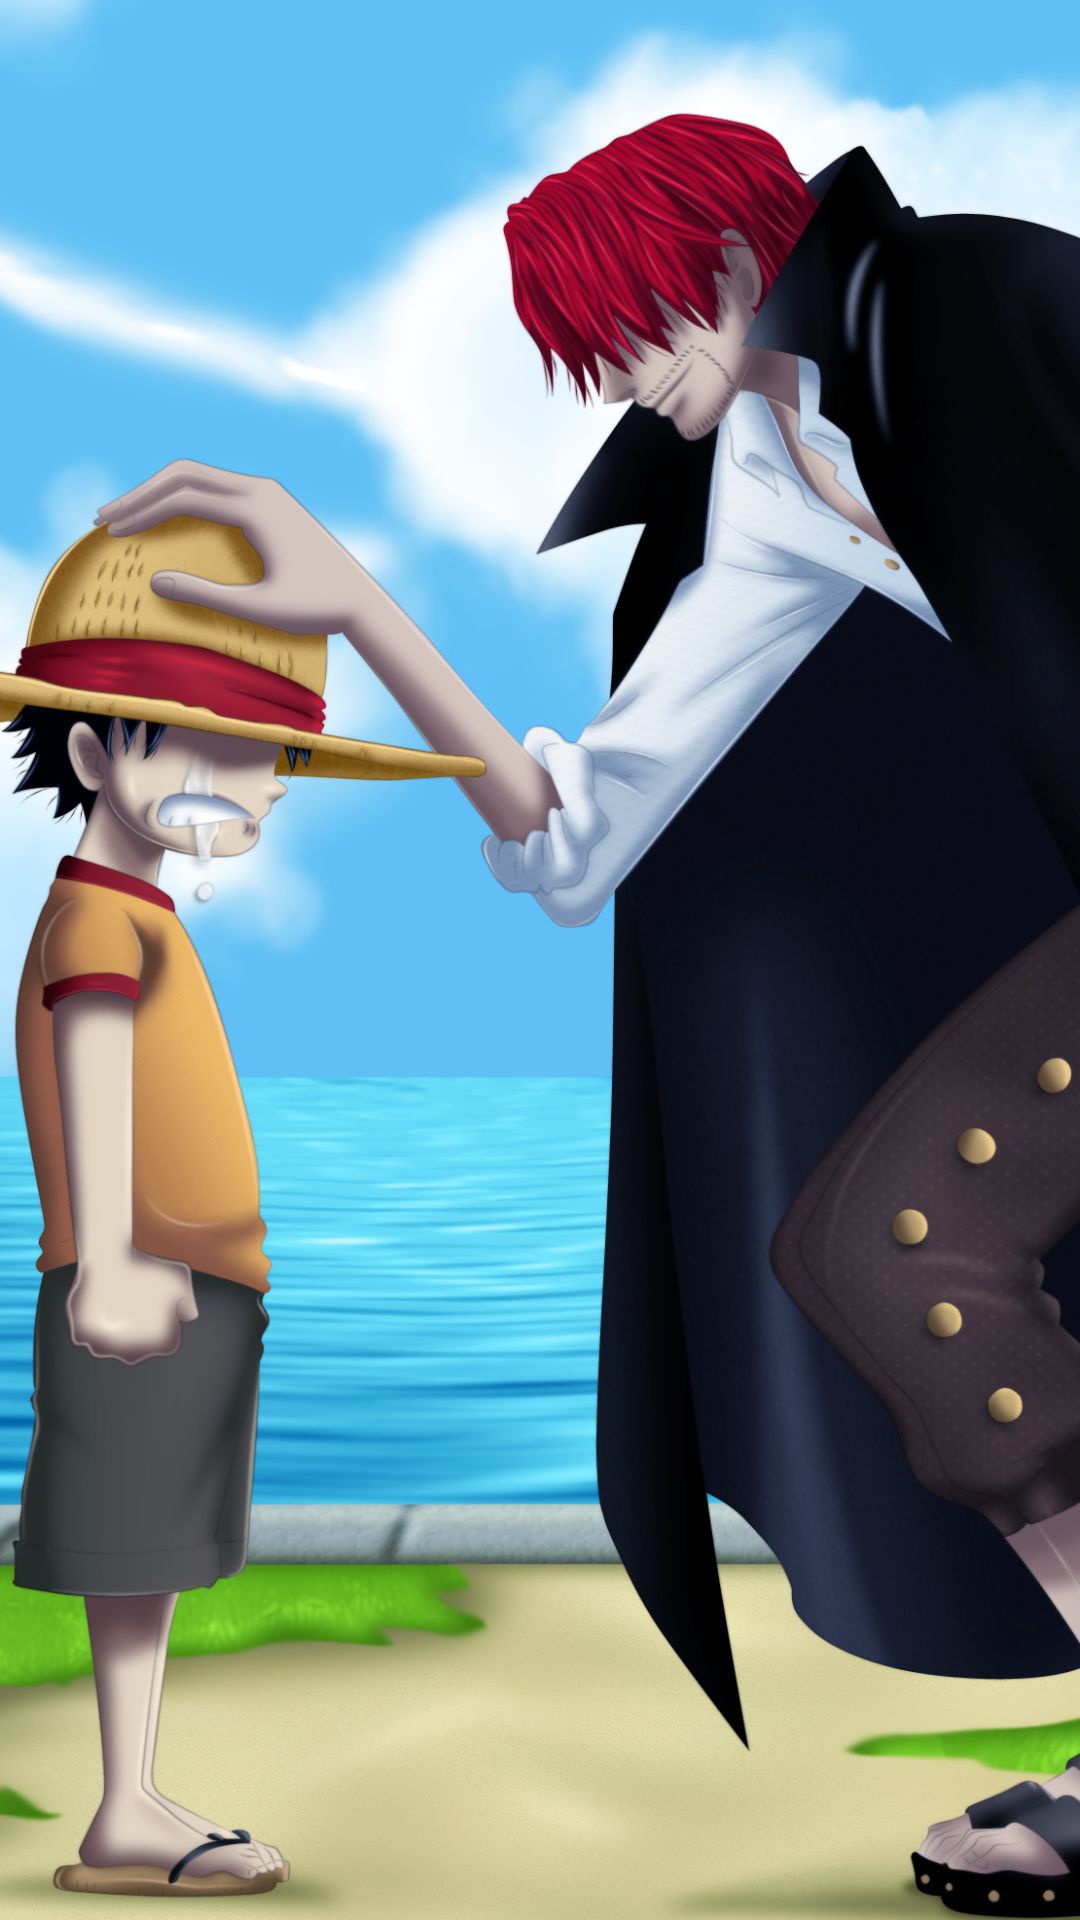 Descarga gratuita de fondo de pantalla para móvil de Animado, One Piece, Monkey D Luffy, Shanks (Una Pieza).